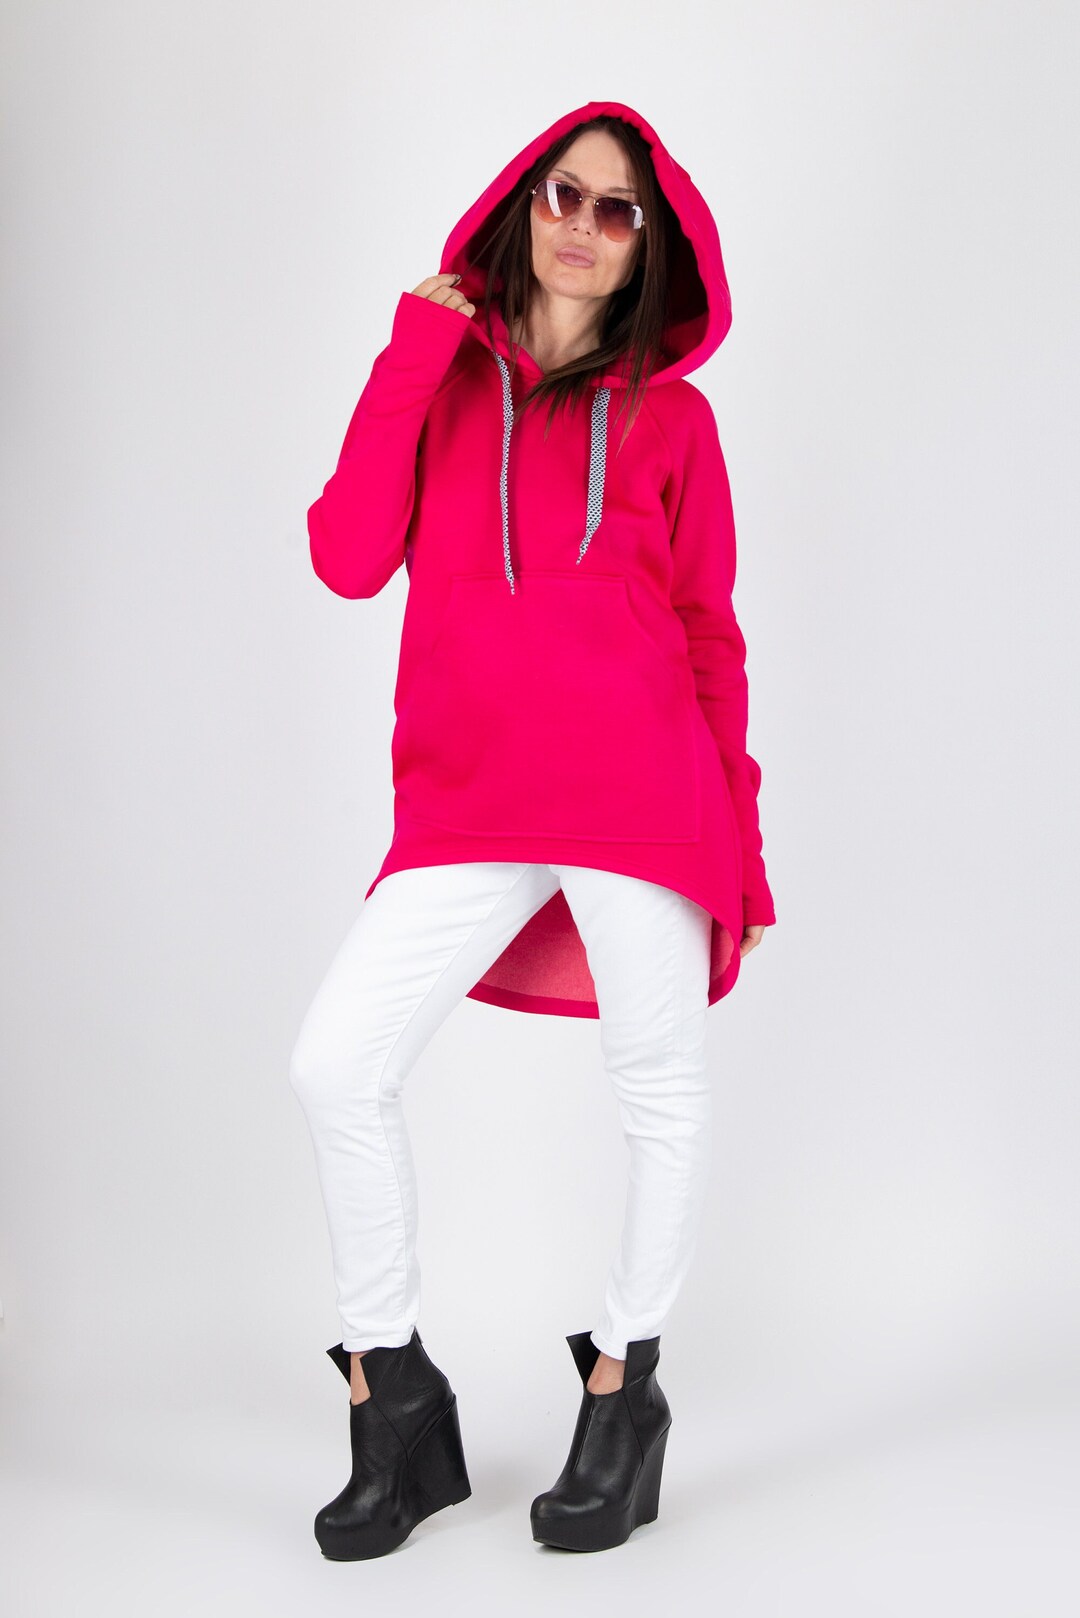 Frauen Hot Pink Hoodie asymetrisches Sweatshirt Plus Size - Etsy.de